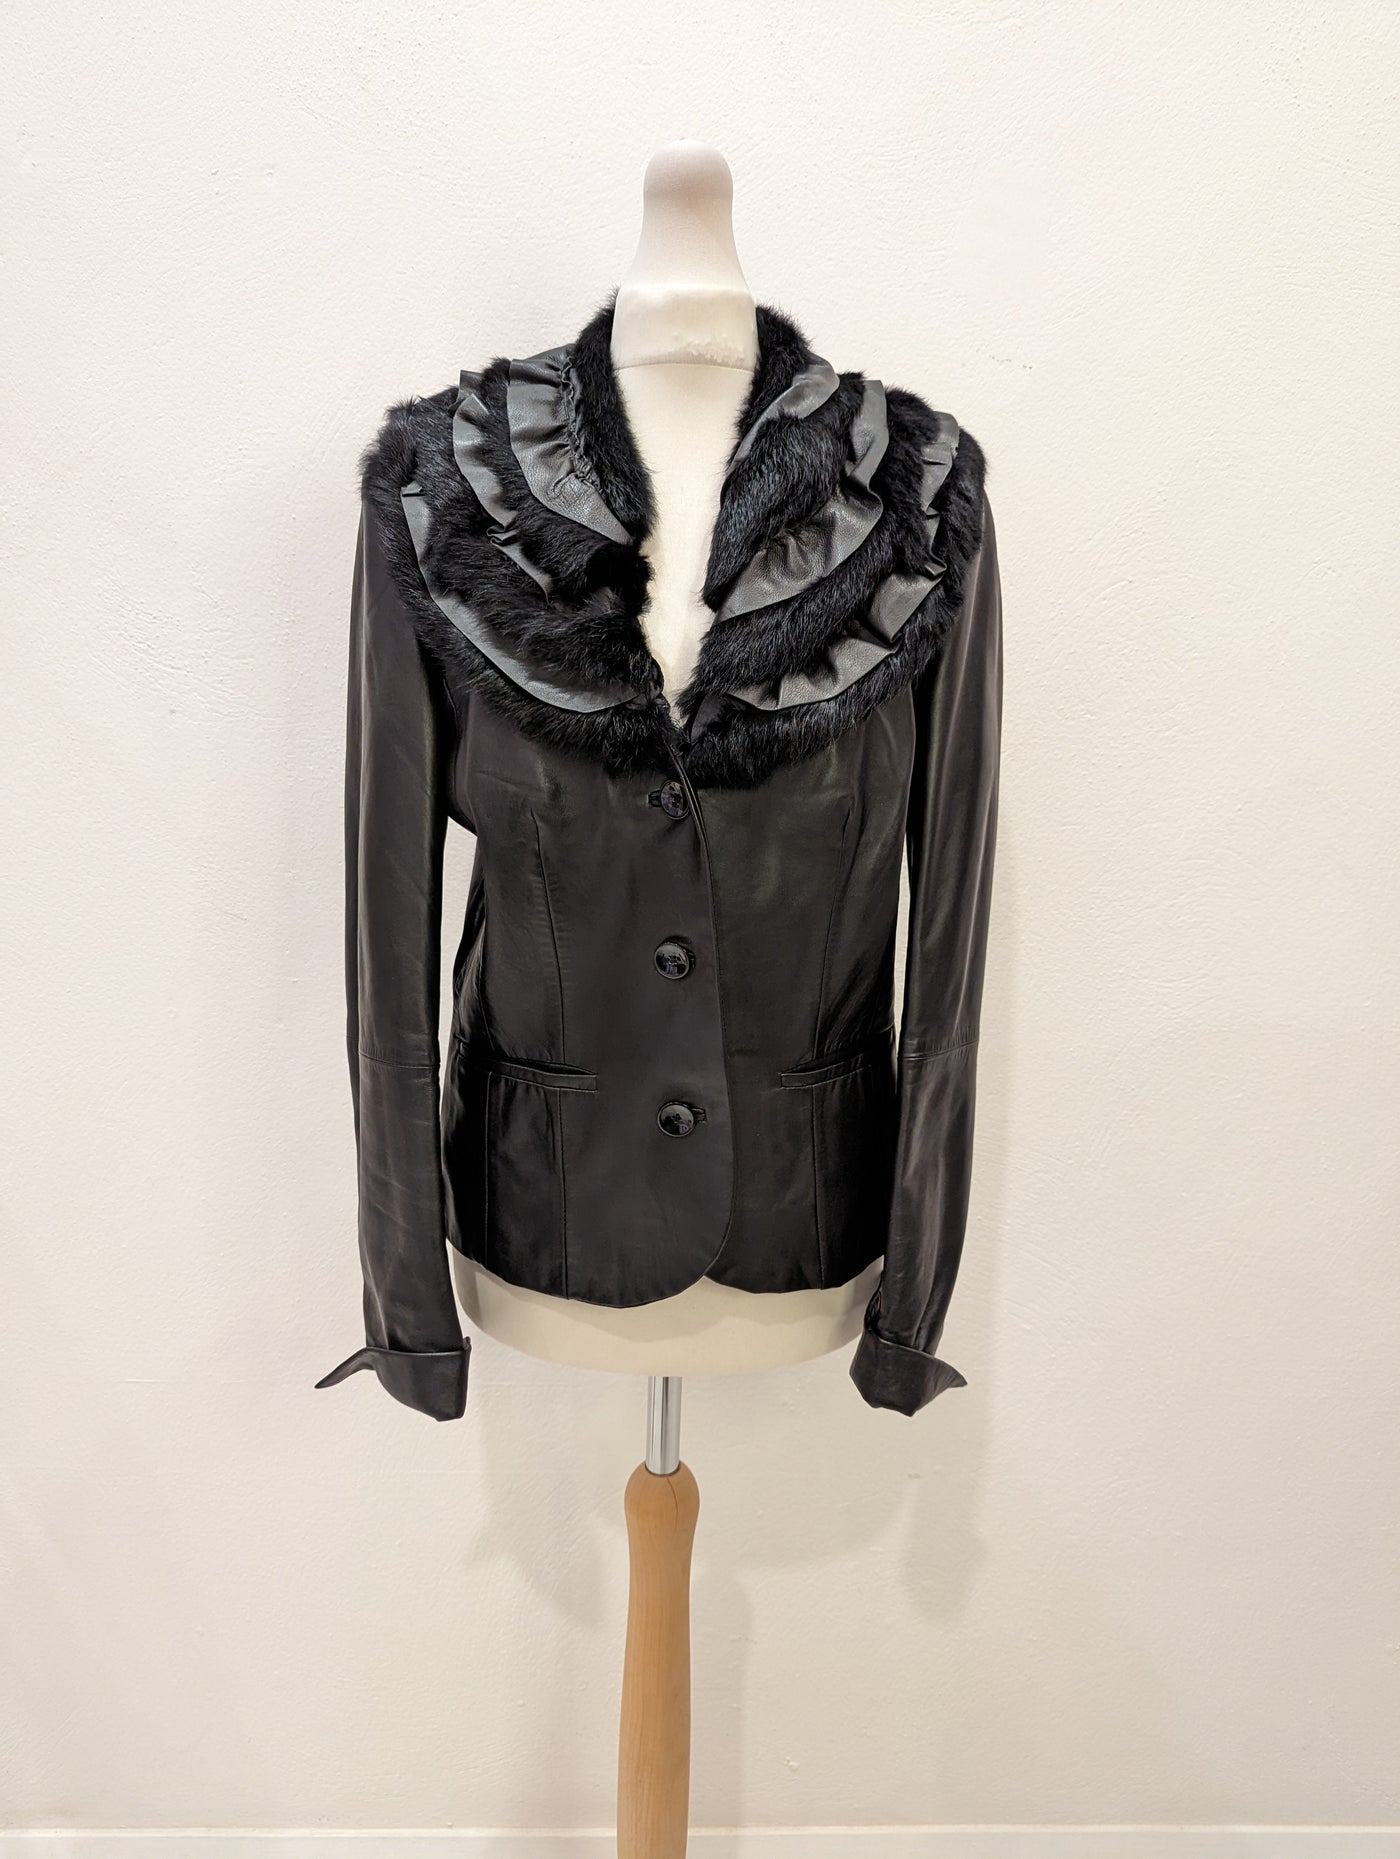 Gil Bret Black Leather Jacket 36